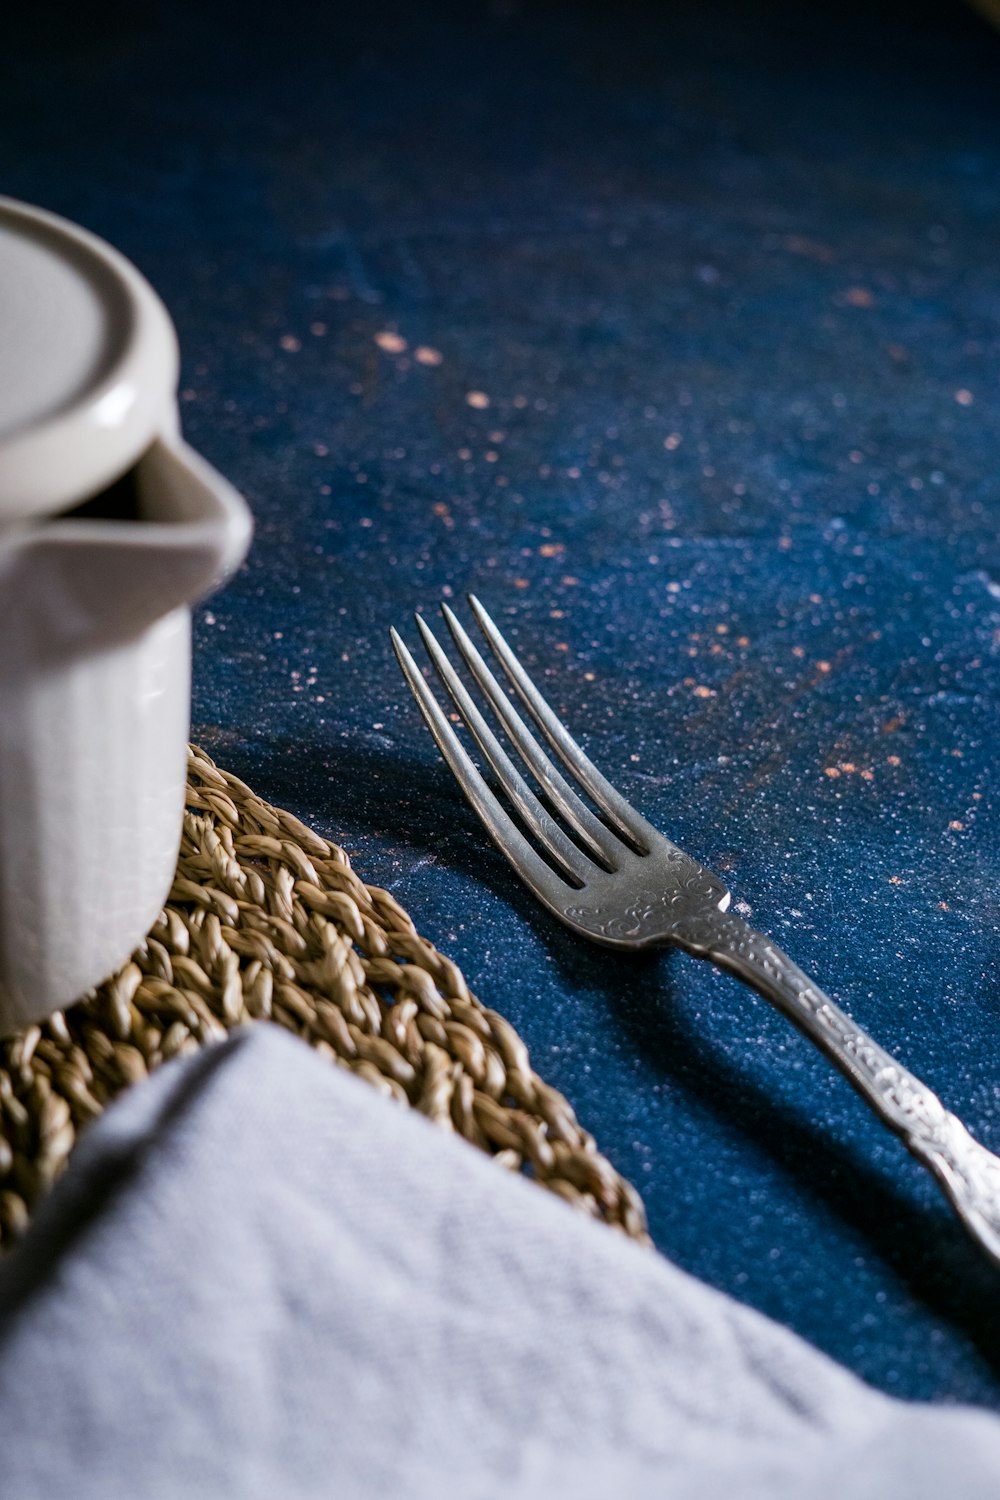 silver fork beside white ceramic mug